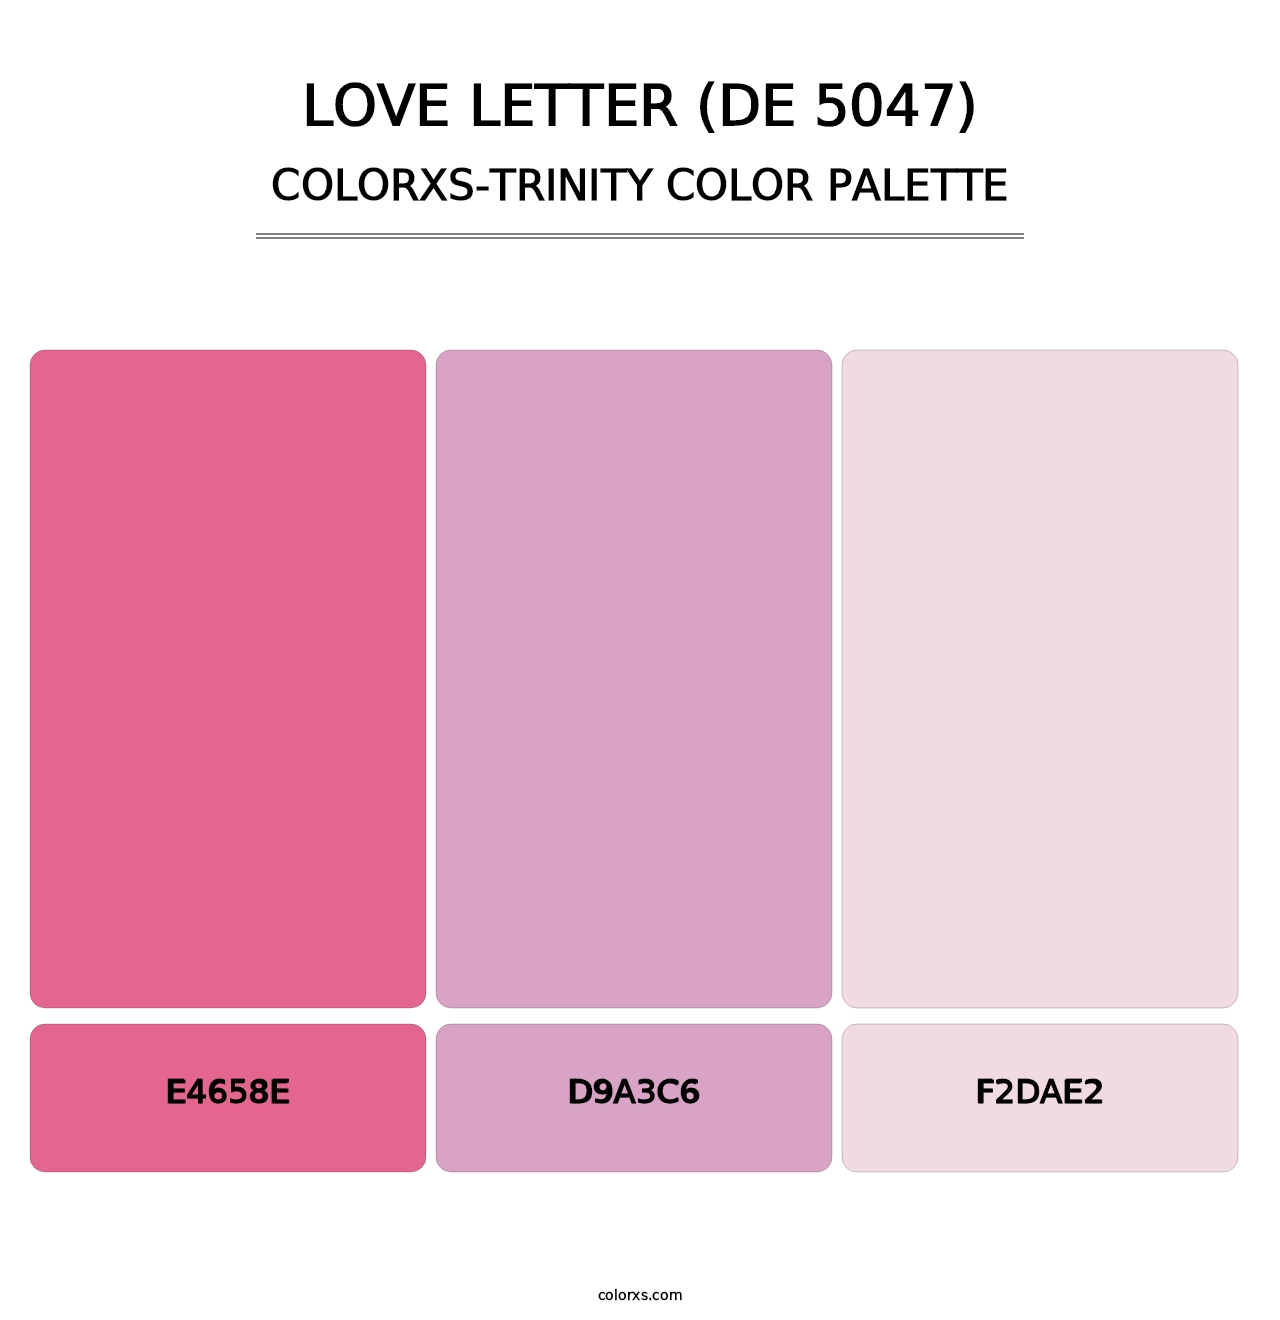 Love Letter (DE 5047) - Colorxs Trinity Palette